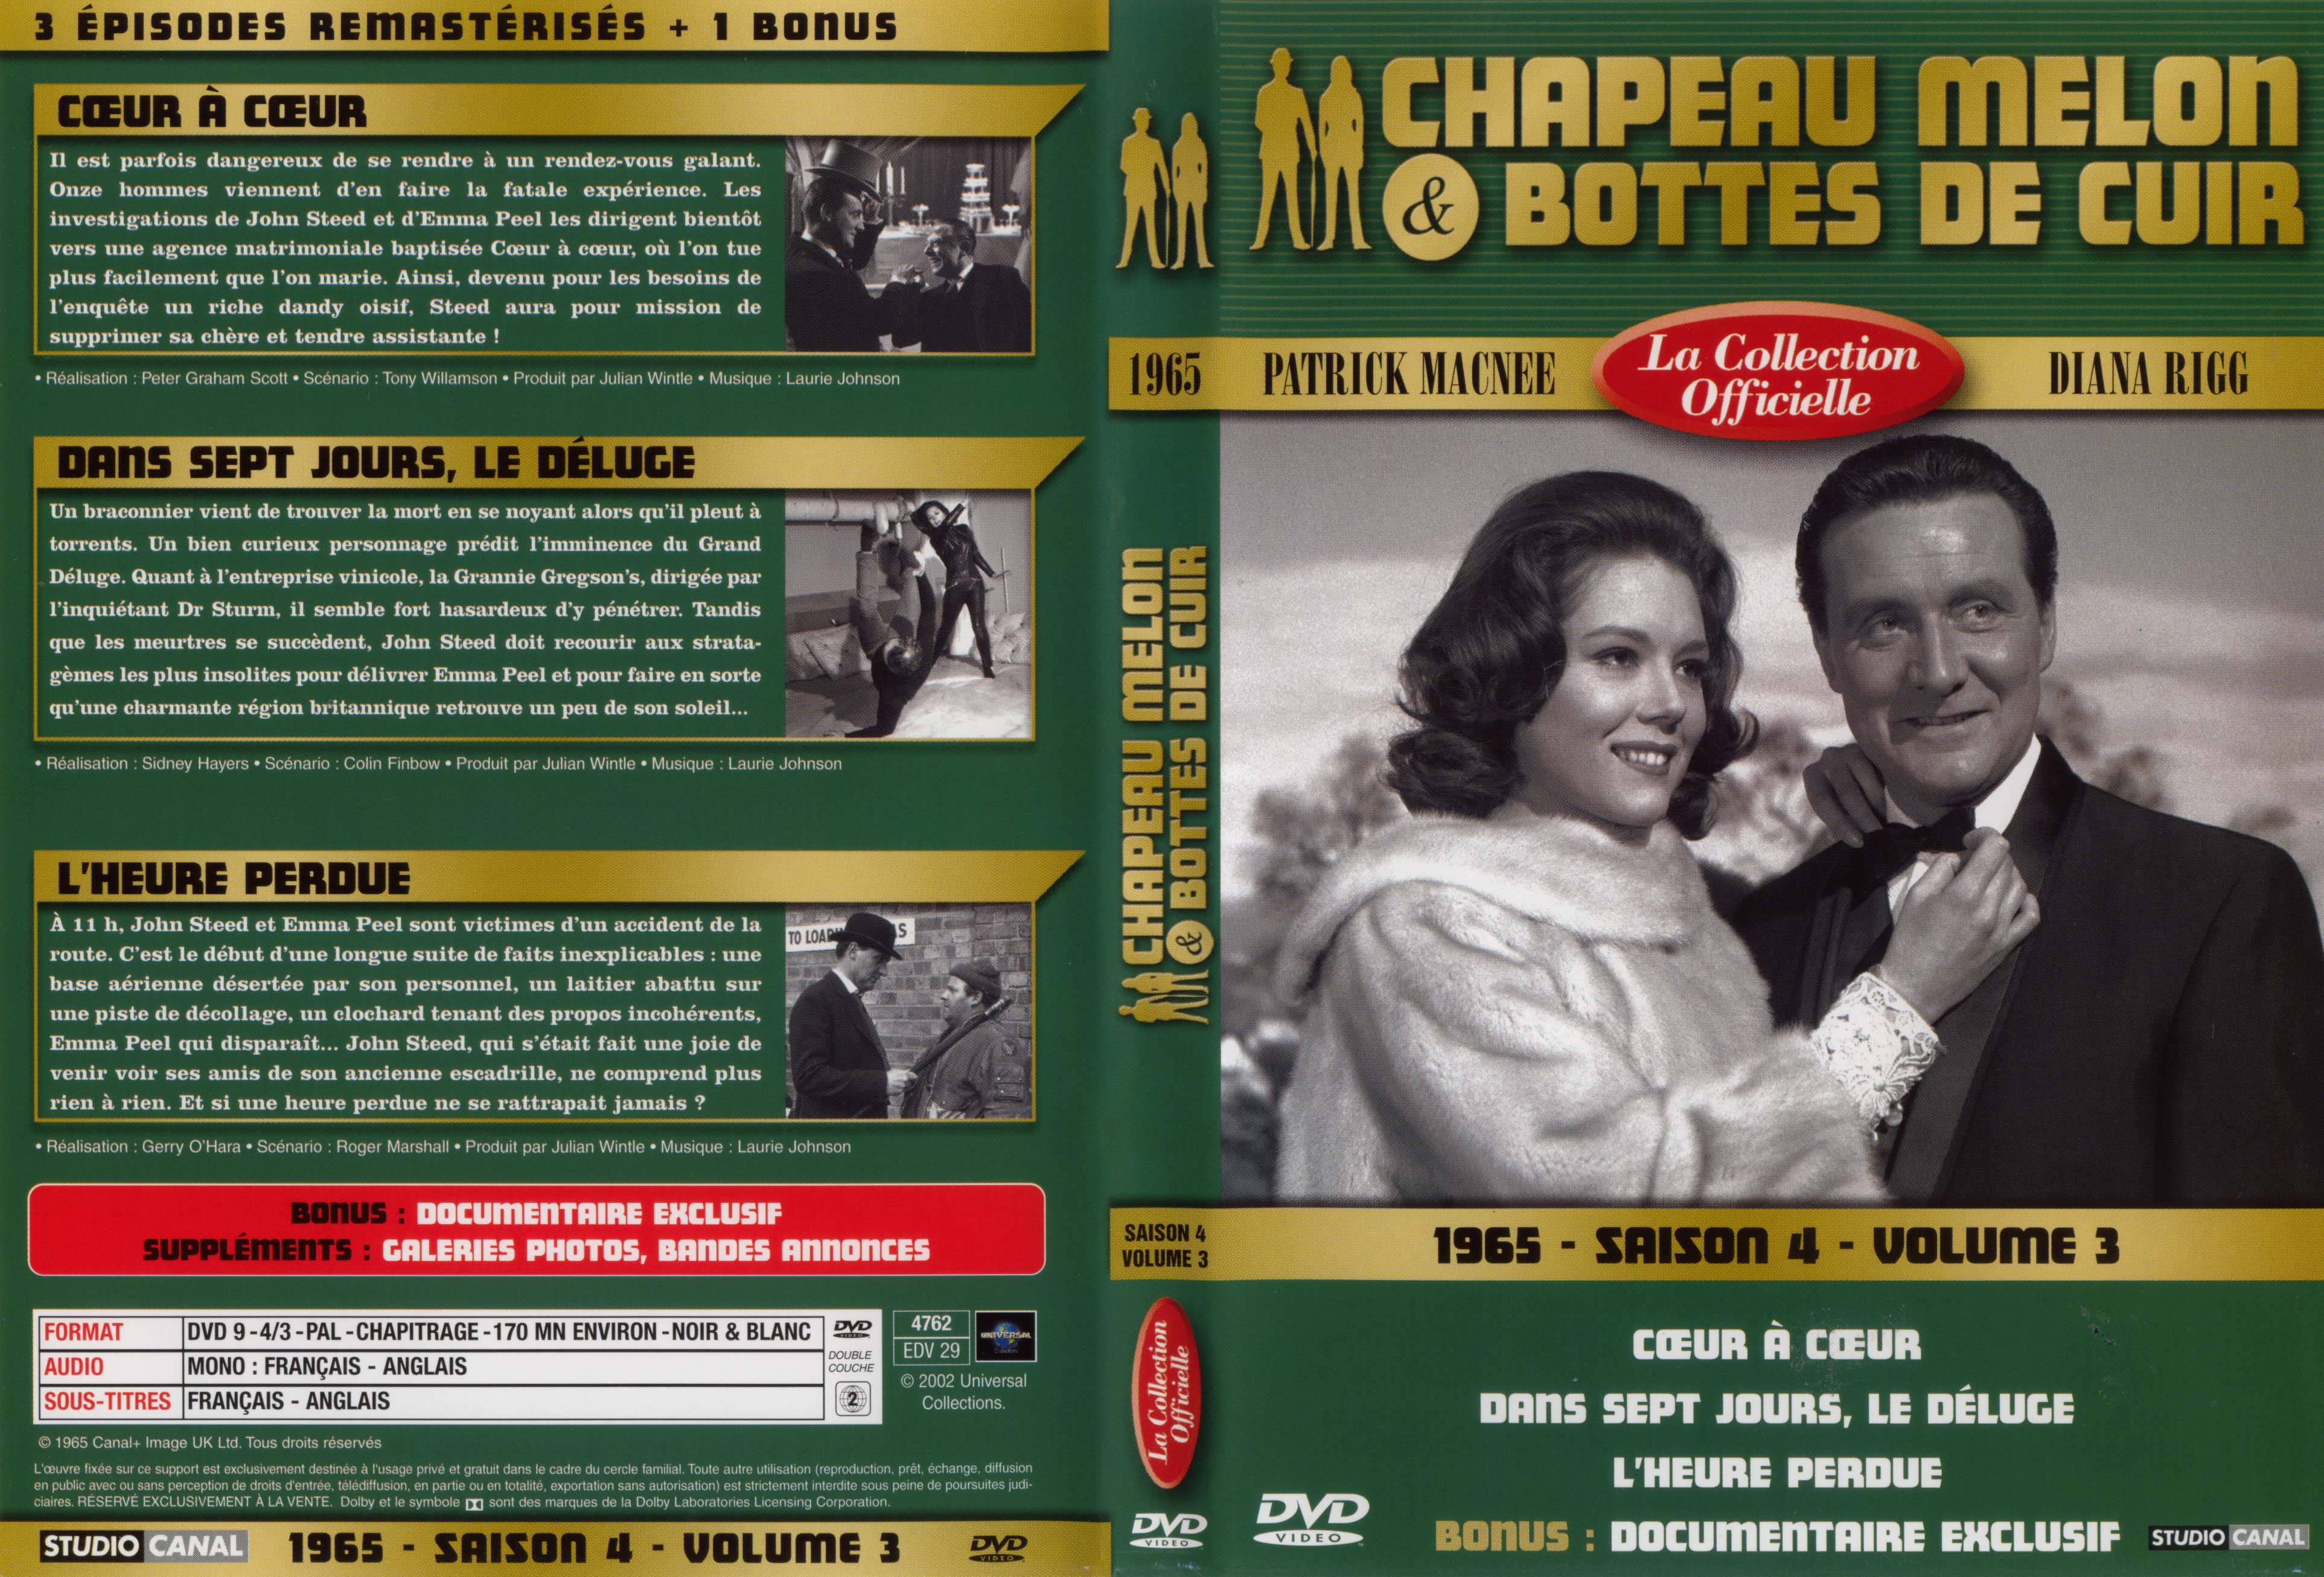 Jaquette DVD Chapeau melon et bottes de cuir 1965 saison 4 vol 3